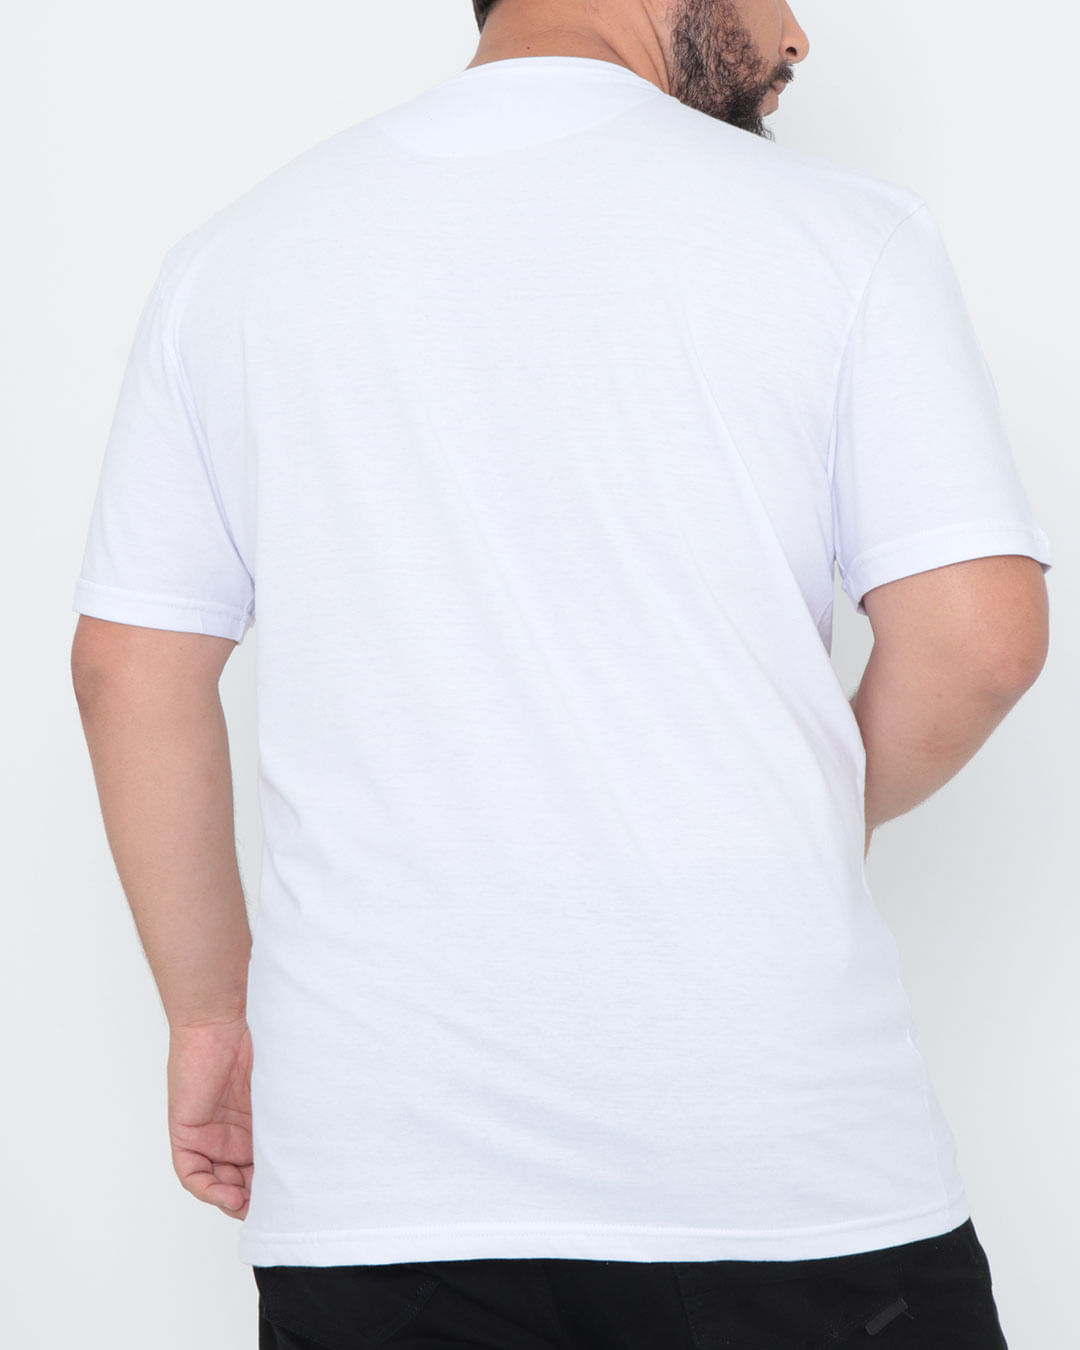 Camiseta-Plus-Size-Manga-Curta-Estampa-Caveira-Branca